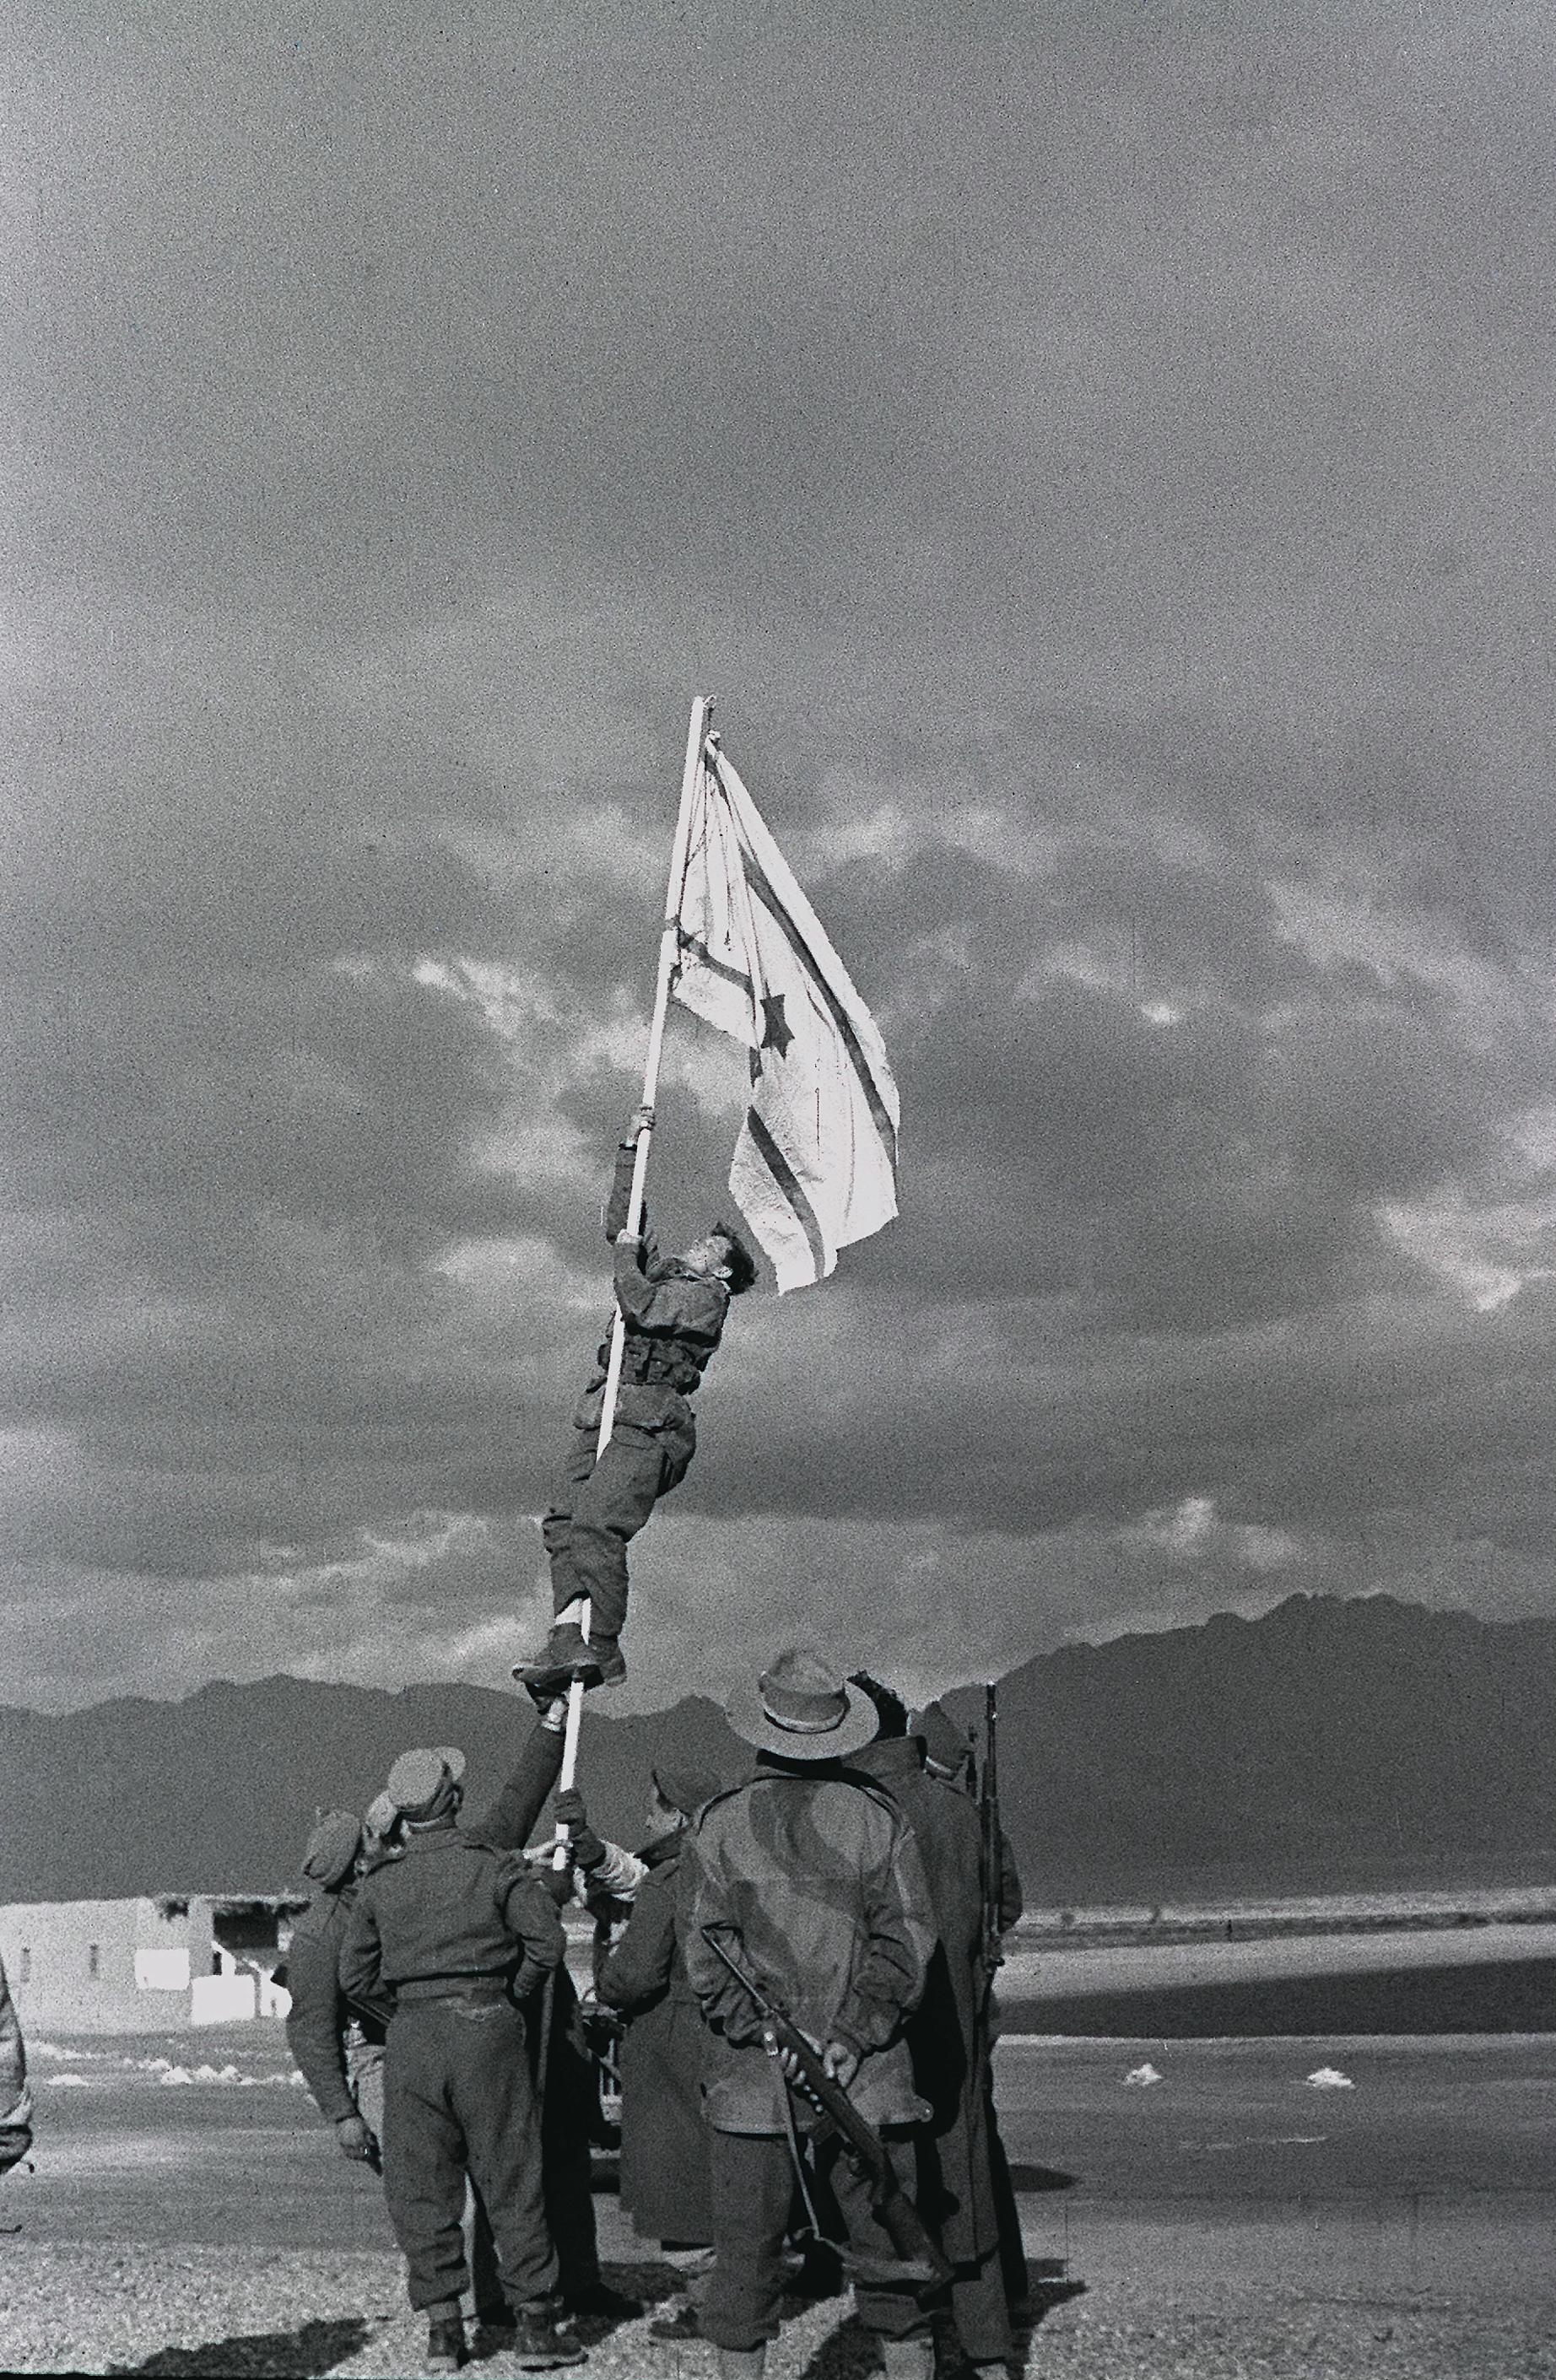 הנפת דגל הדיו כפי שצילם אותה מיכה פרי (צילום: רשות הכלל)